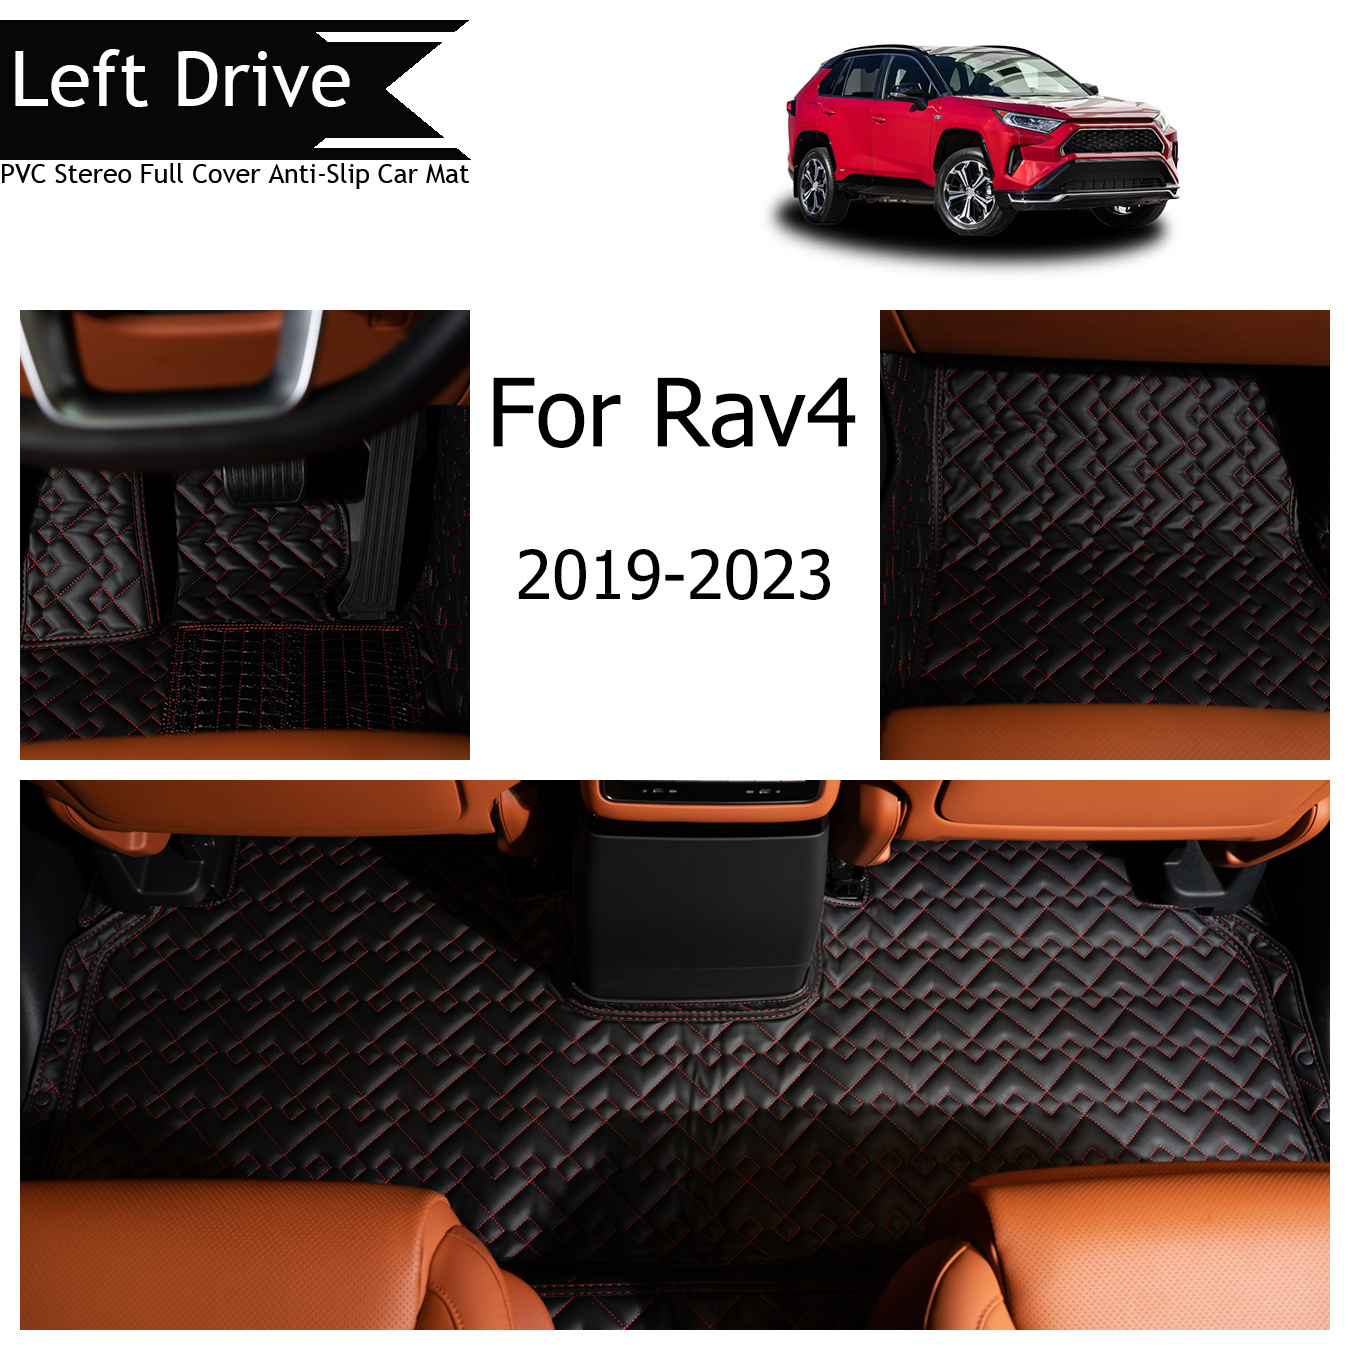 

Tegart [lhd]for Toyota For Rav4 2019-2023 3 Layer Pvc Stereo Full Cover Anti-slip Car Mat